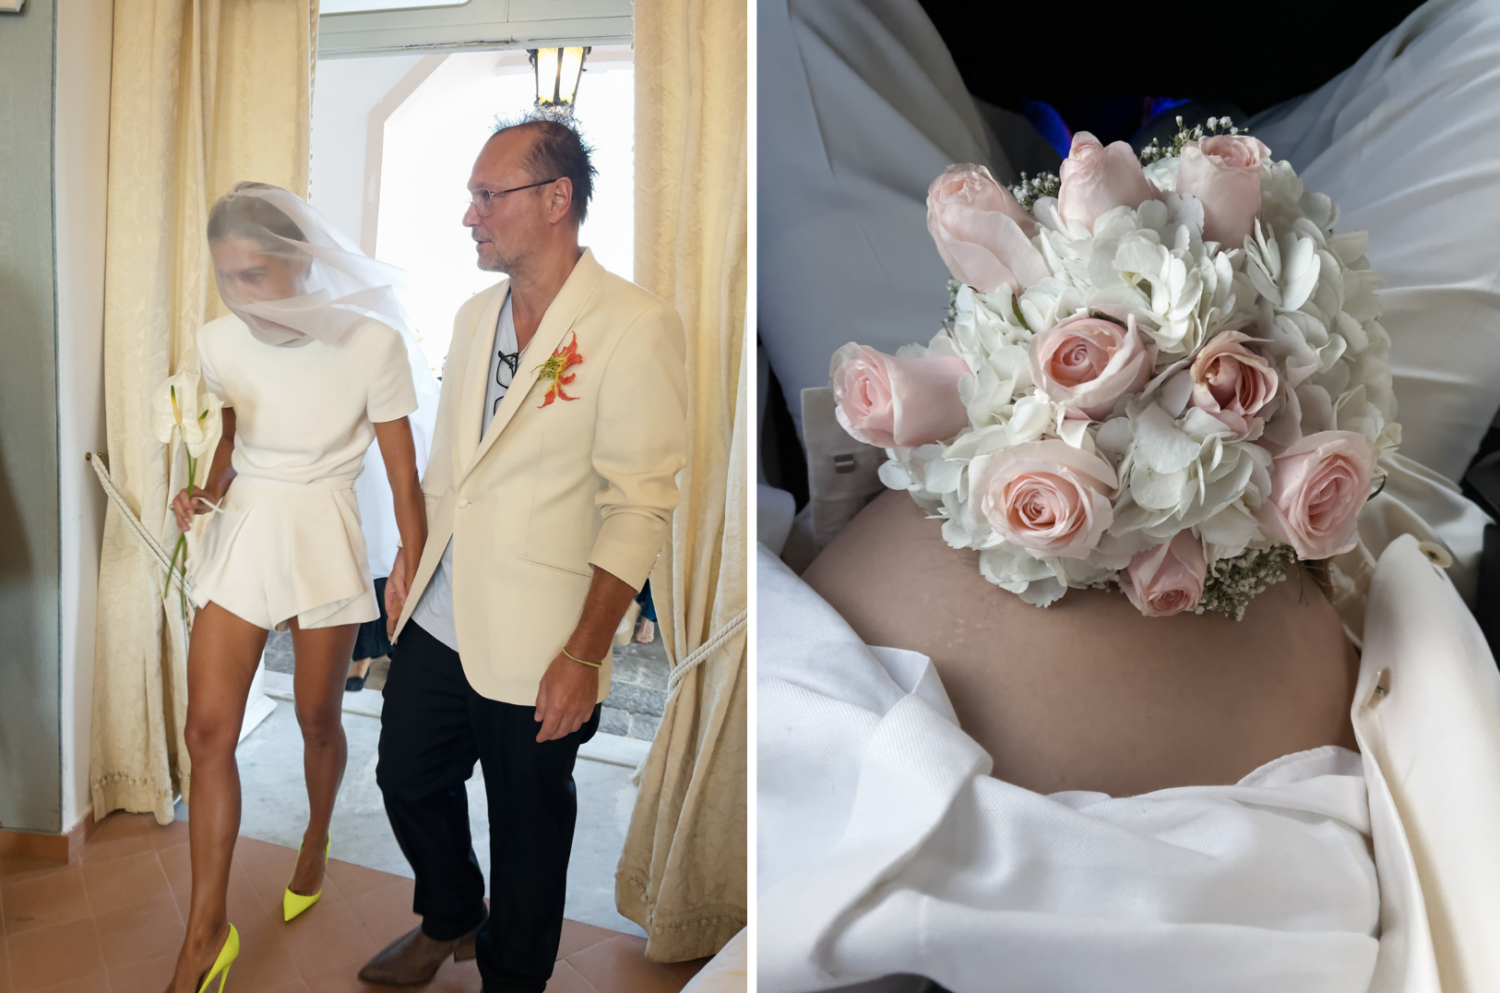 links: Hochzeitsfoto von Juergen Teller und Dovile Drizyte, rechts: ein Blumenstrauß auf einem schwangeren Bauch, weiße Kleidung